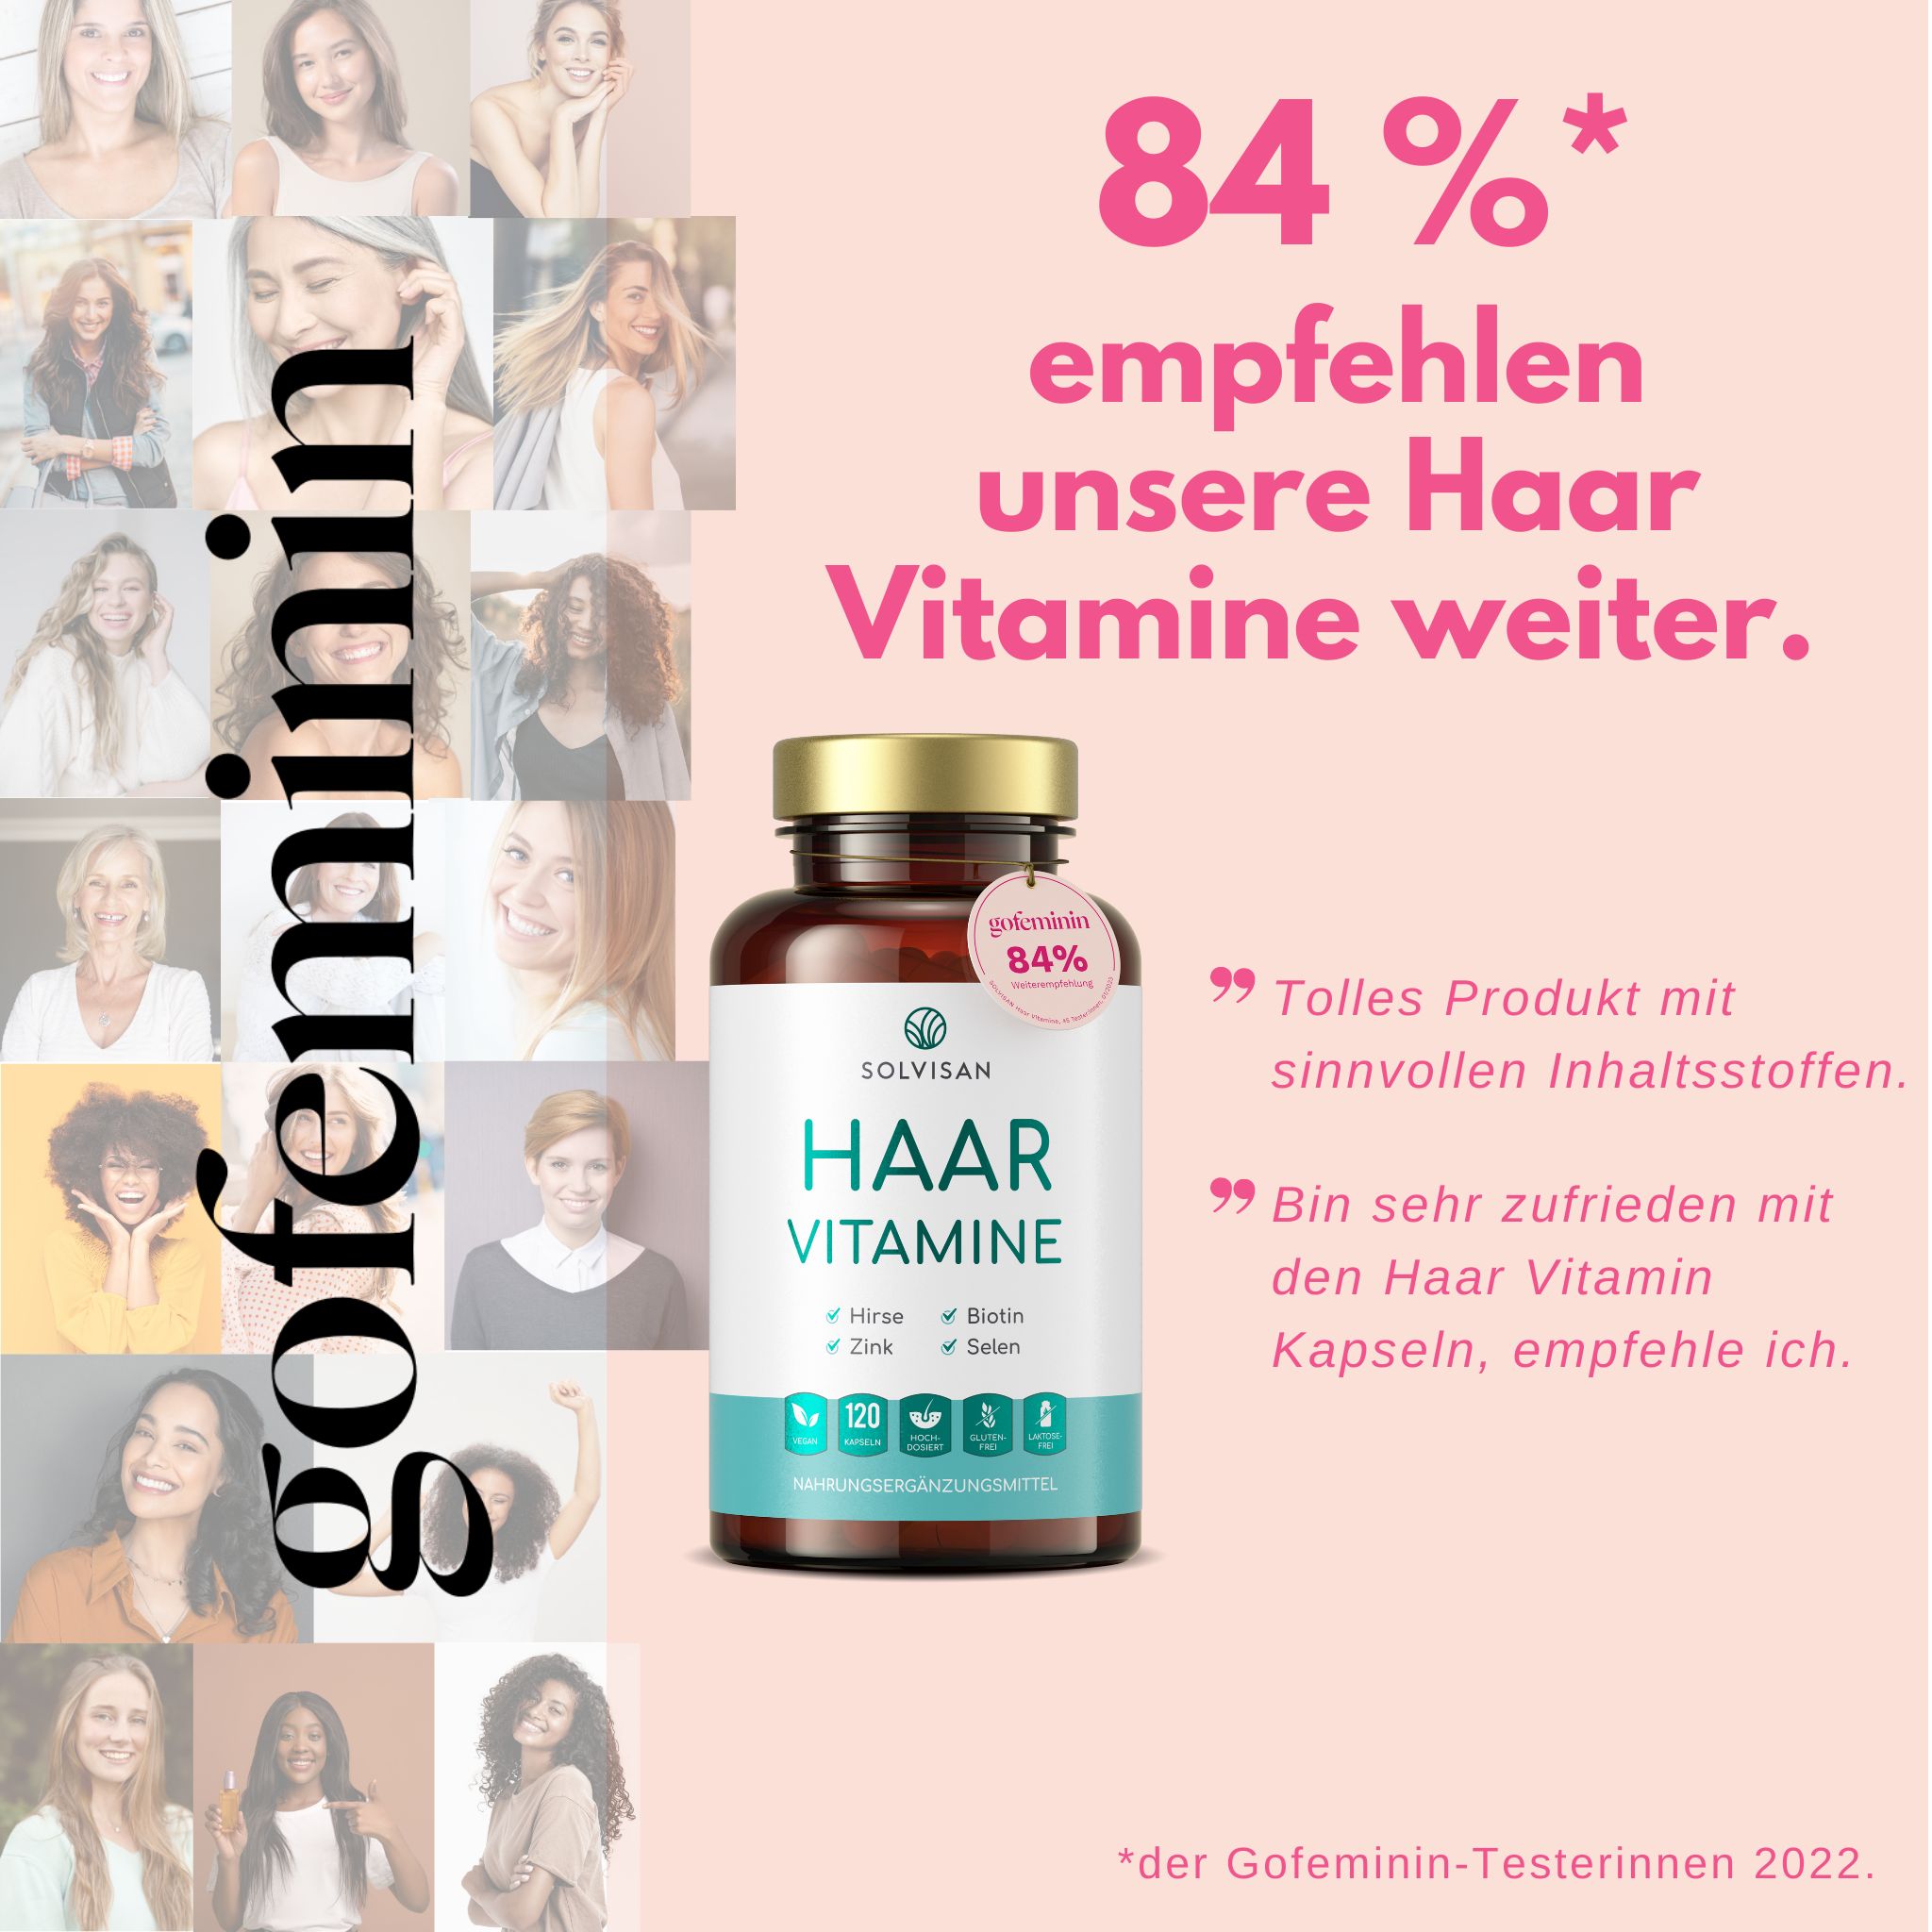 SOLVISAN® Haar Vitamine - Kapseln mit über 20 Mikronährstoffen wie Biotin, Zink und Selen